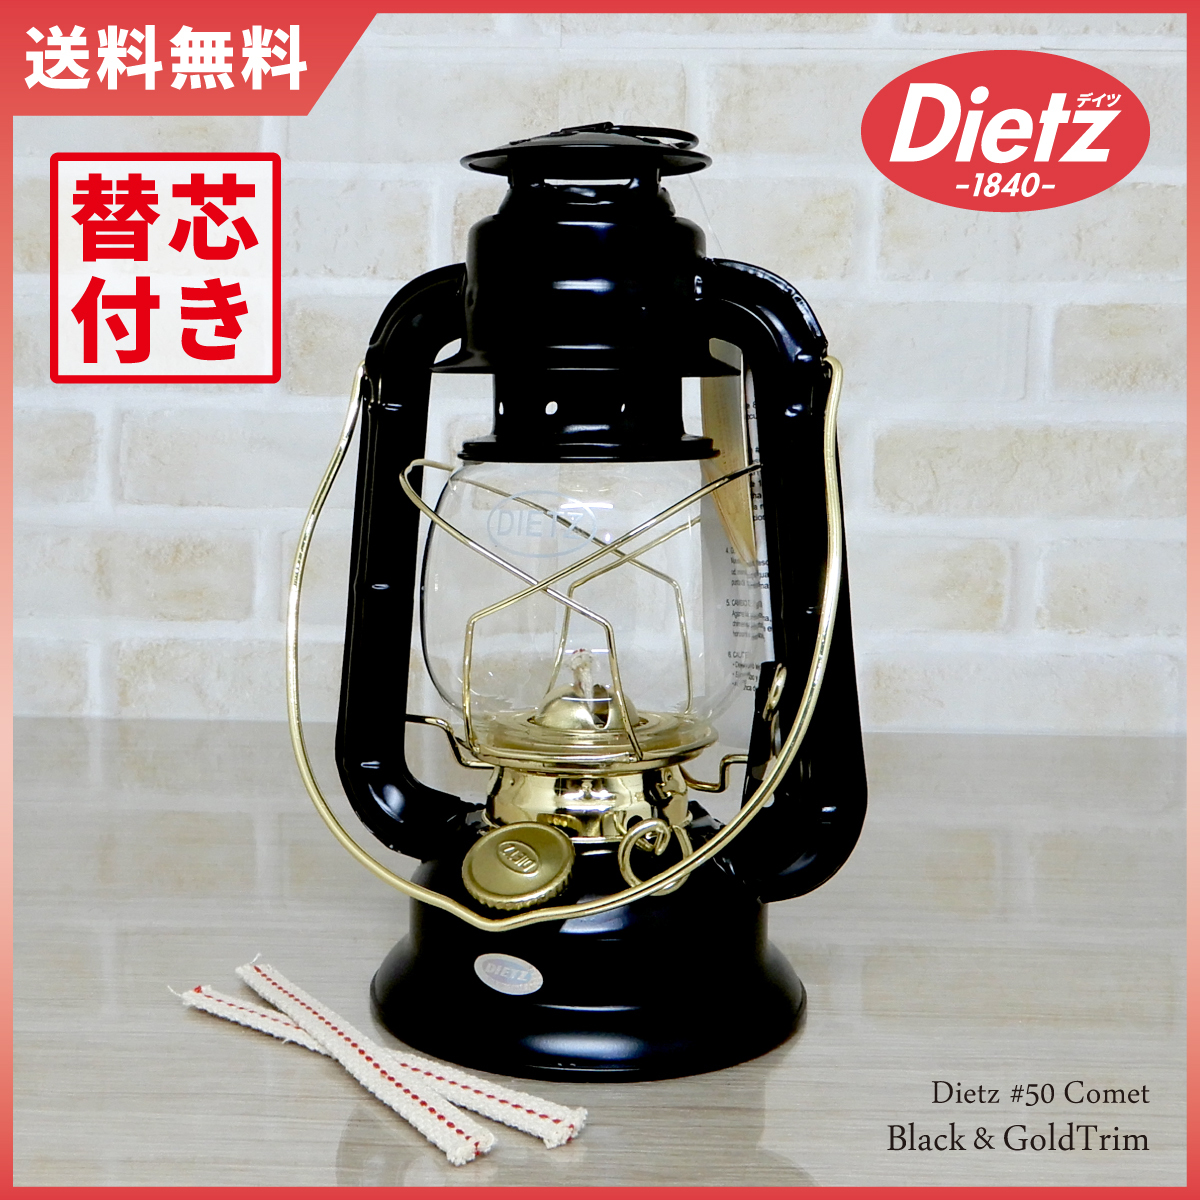 大セール【送料無料】新品 Dietz #50 Comet Oil Lantern Black & Gold Trim 替芯付 ◇デイツ コメット ブラック ハリケーンランタン 黒金